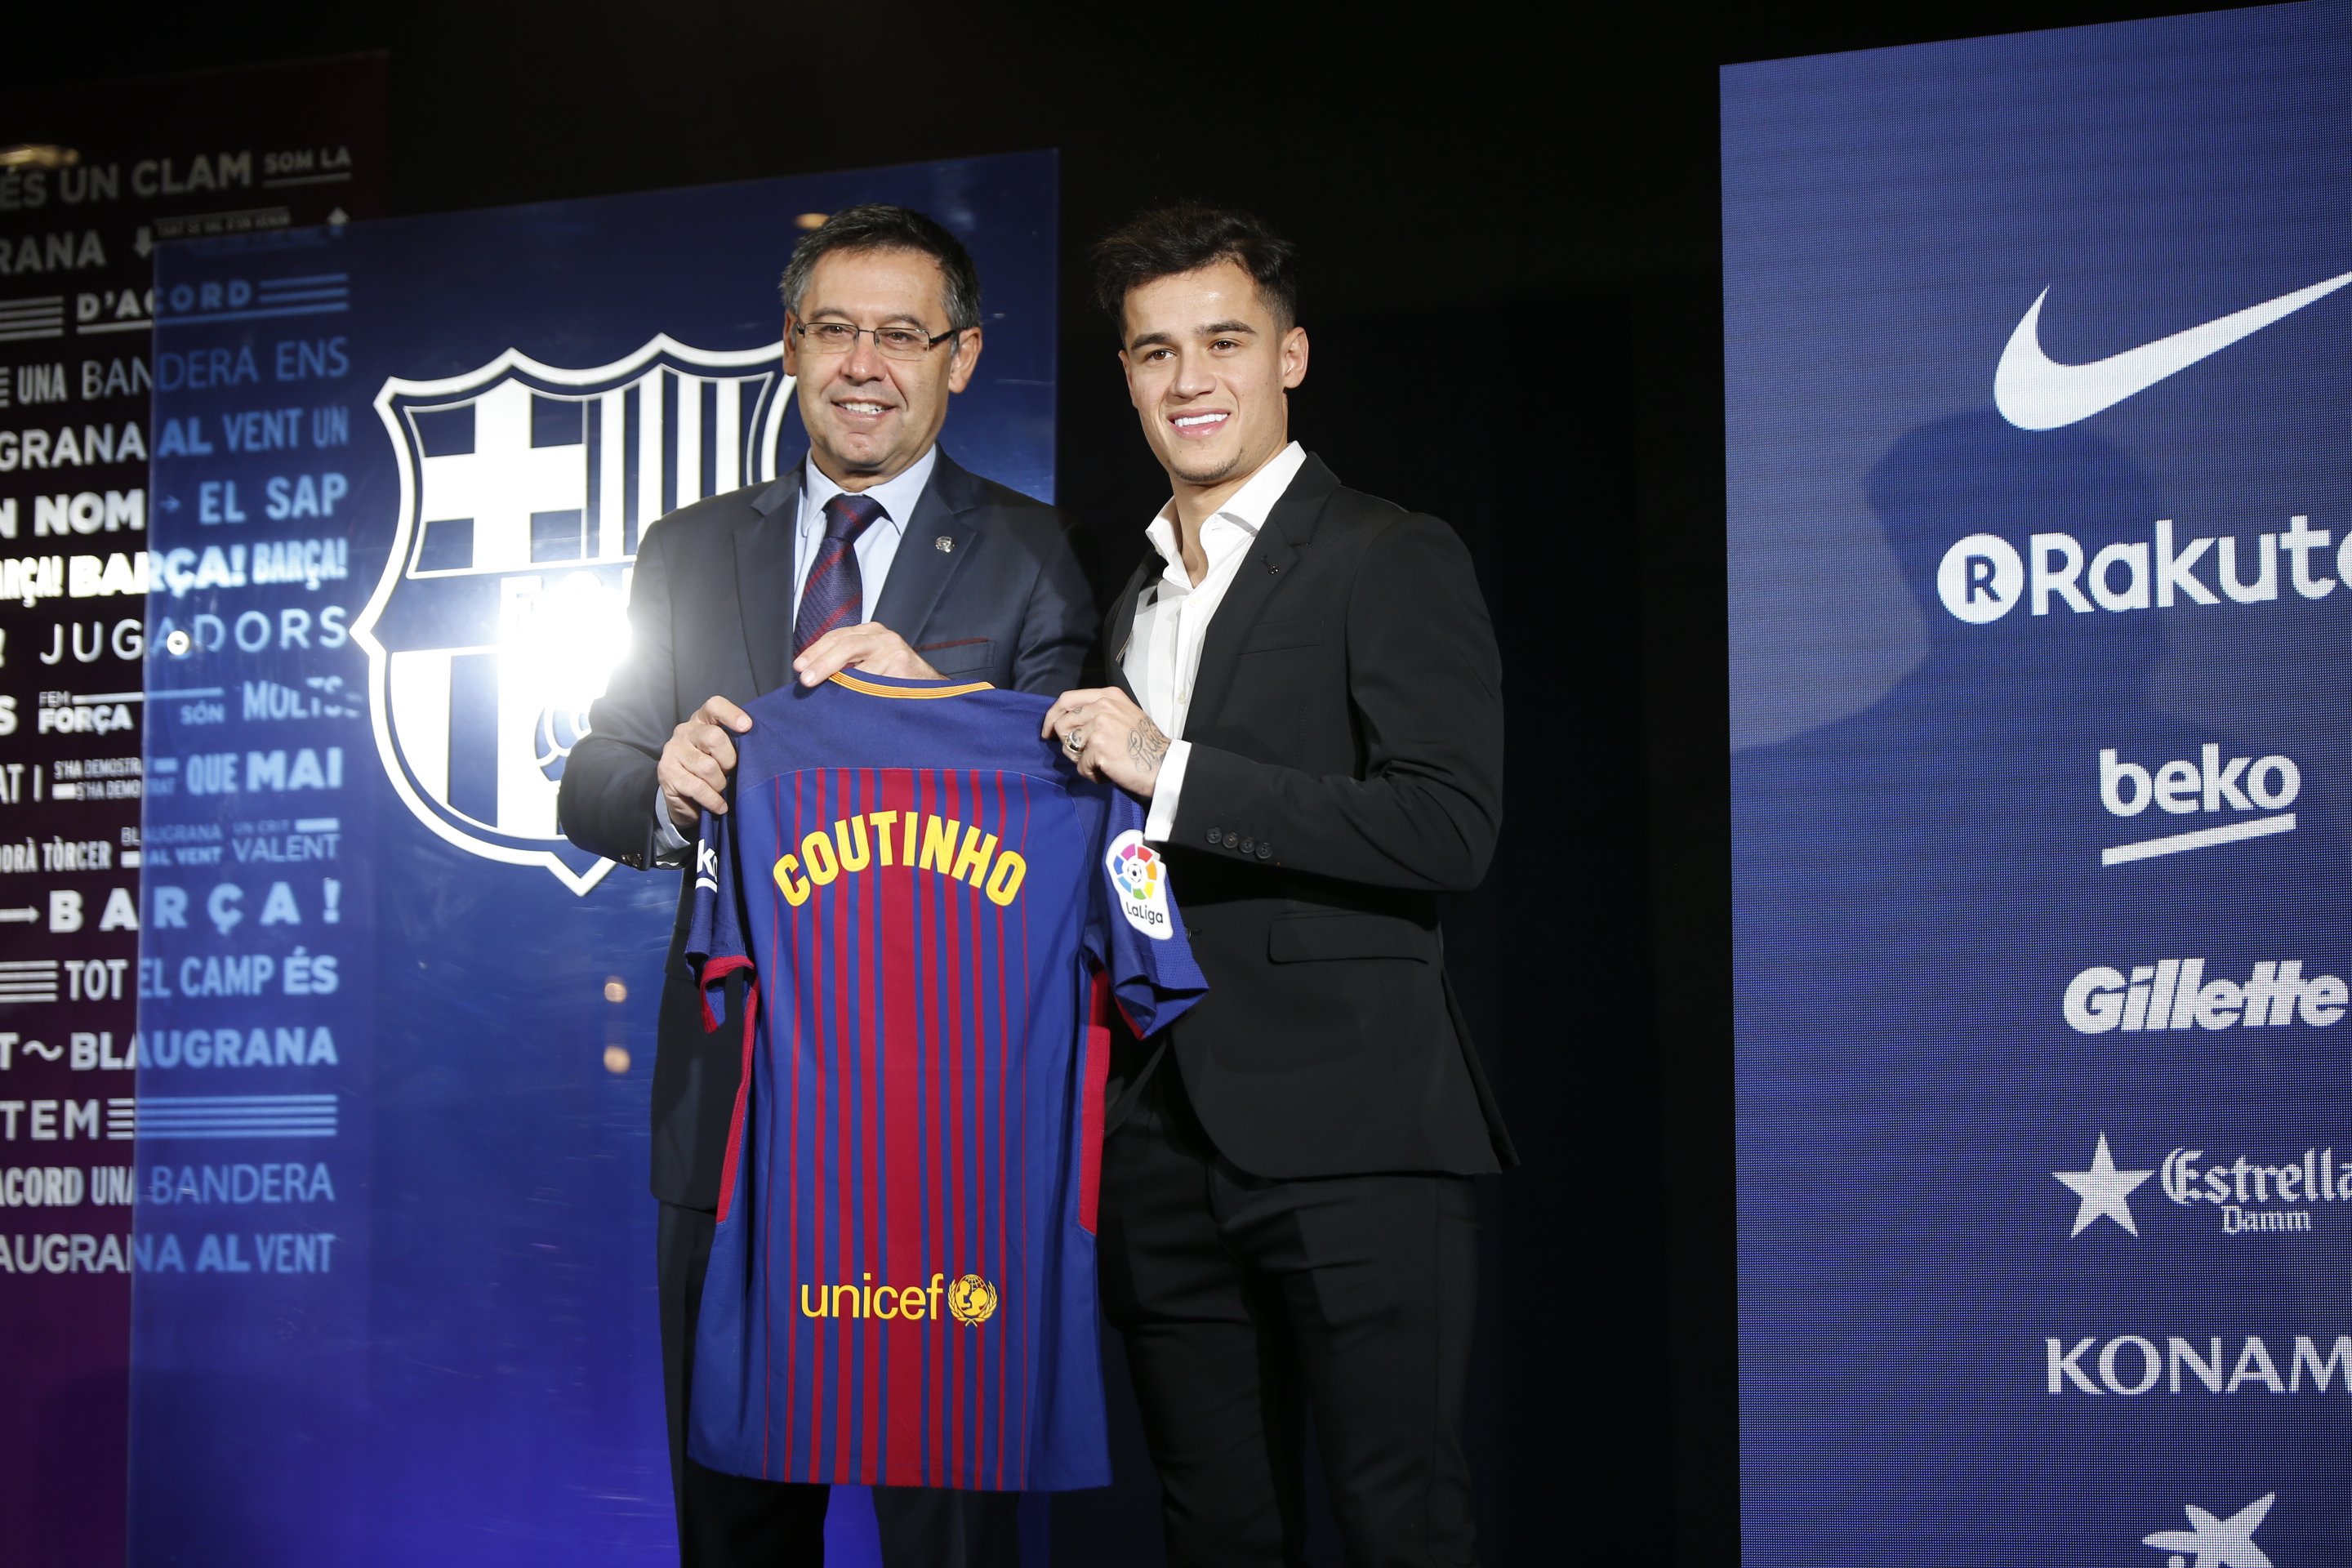 La máquina de gastar millones: el Barça y los clubs amigos